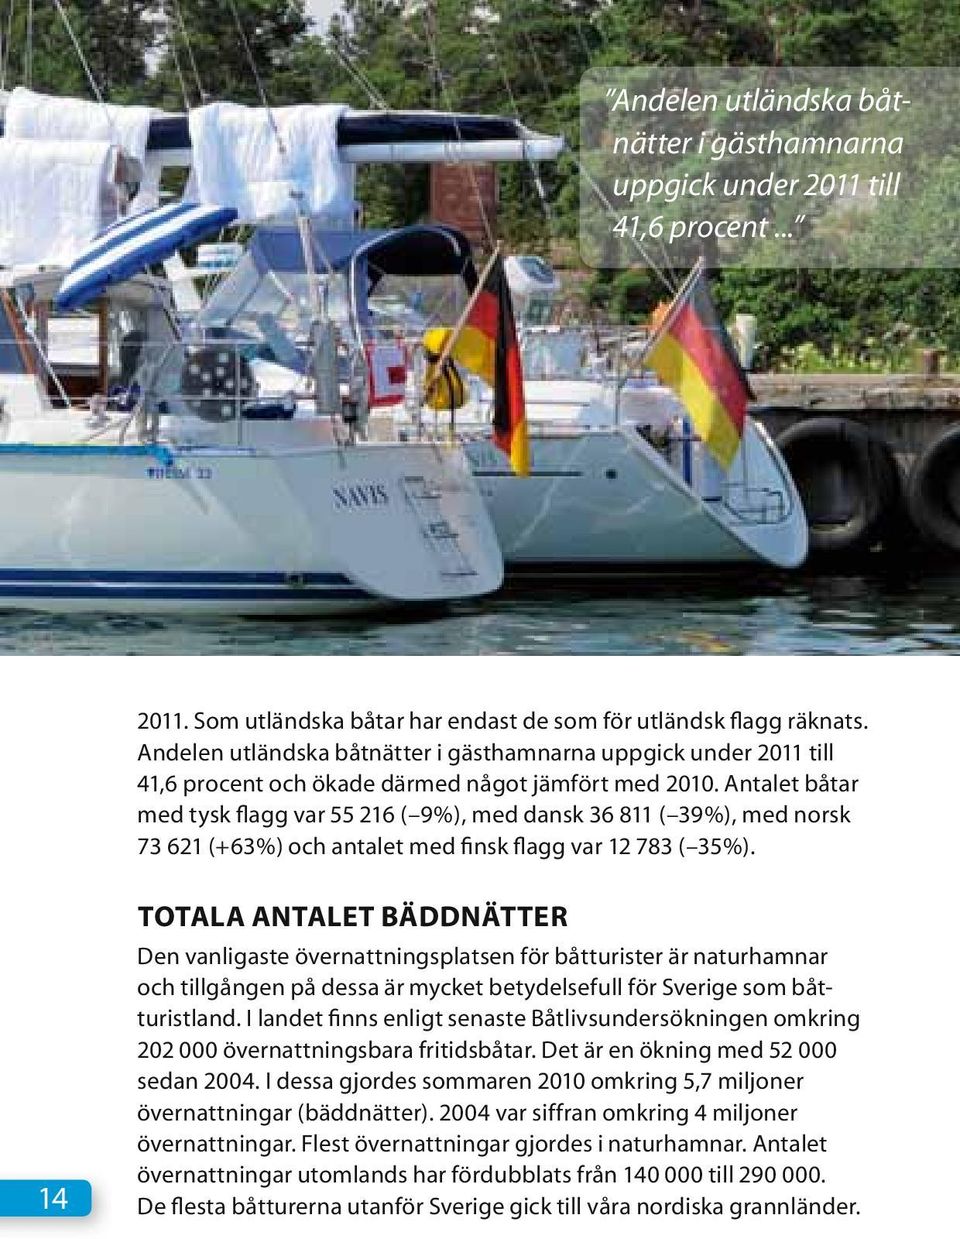 Antalet båtar med tysk flagg var 55 216 ( 9%), med dansk 36 811 ( 39%), med norsk 73 621 (+63%) och antalet med finsk flagg var 12 783 ( 35%).